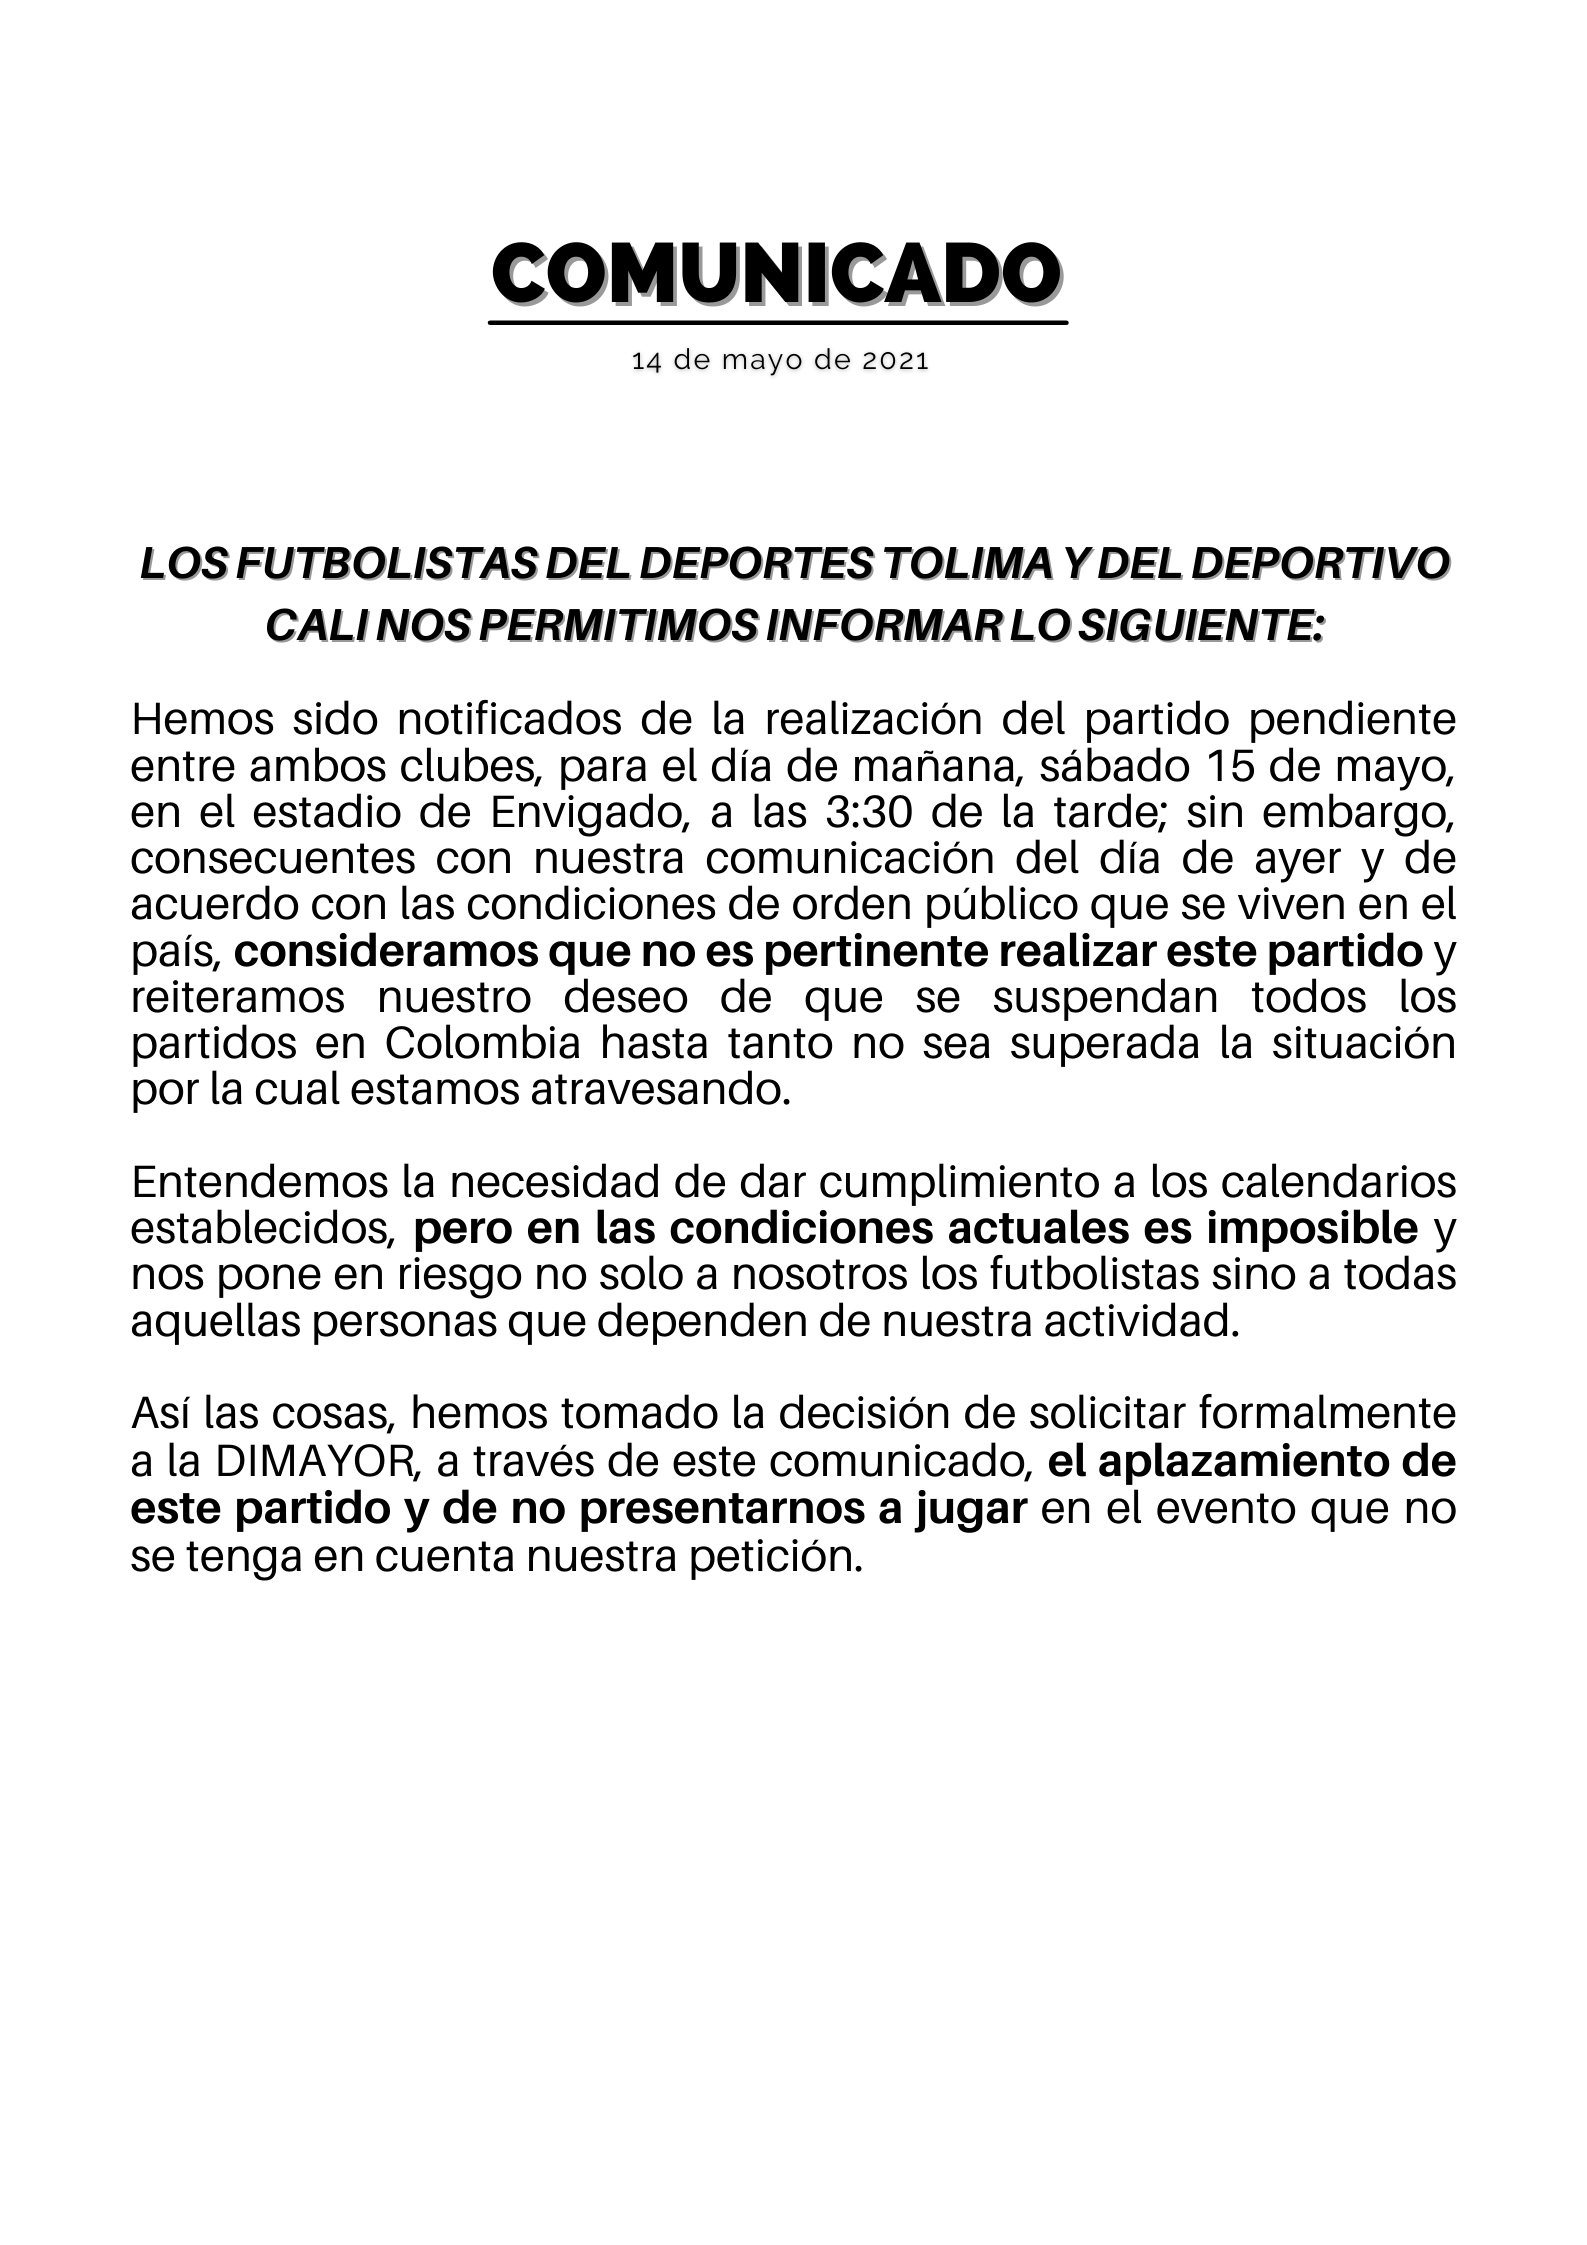 Comunicado de prensa de Acolfutpro del viernes 14 de mayo sobre la realización del partido entre Deportivo Cali y Deportes Tolima por los cuartos de final de vuelta de la Liga BetPlay I 2021 / (Twitter: @acolfutpro).